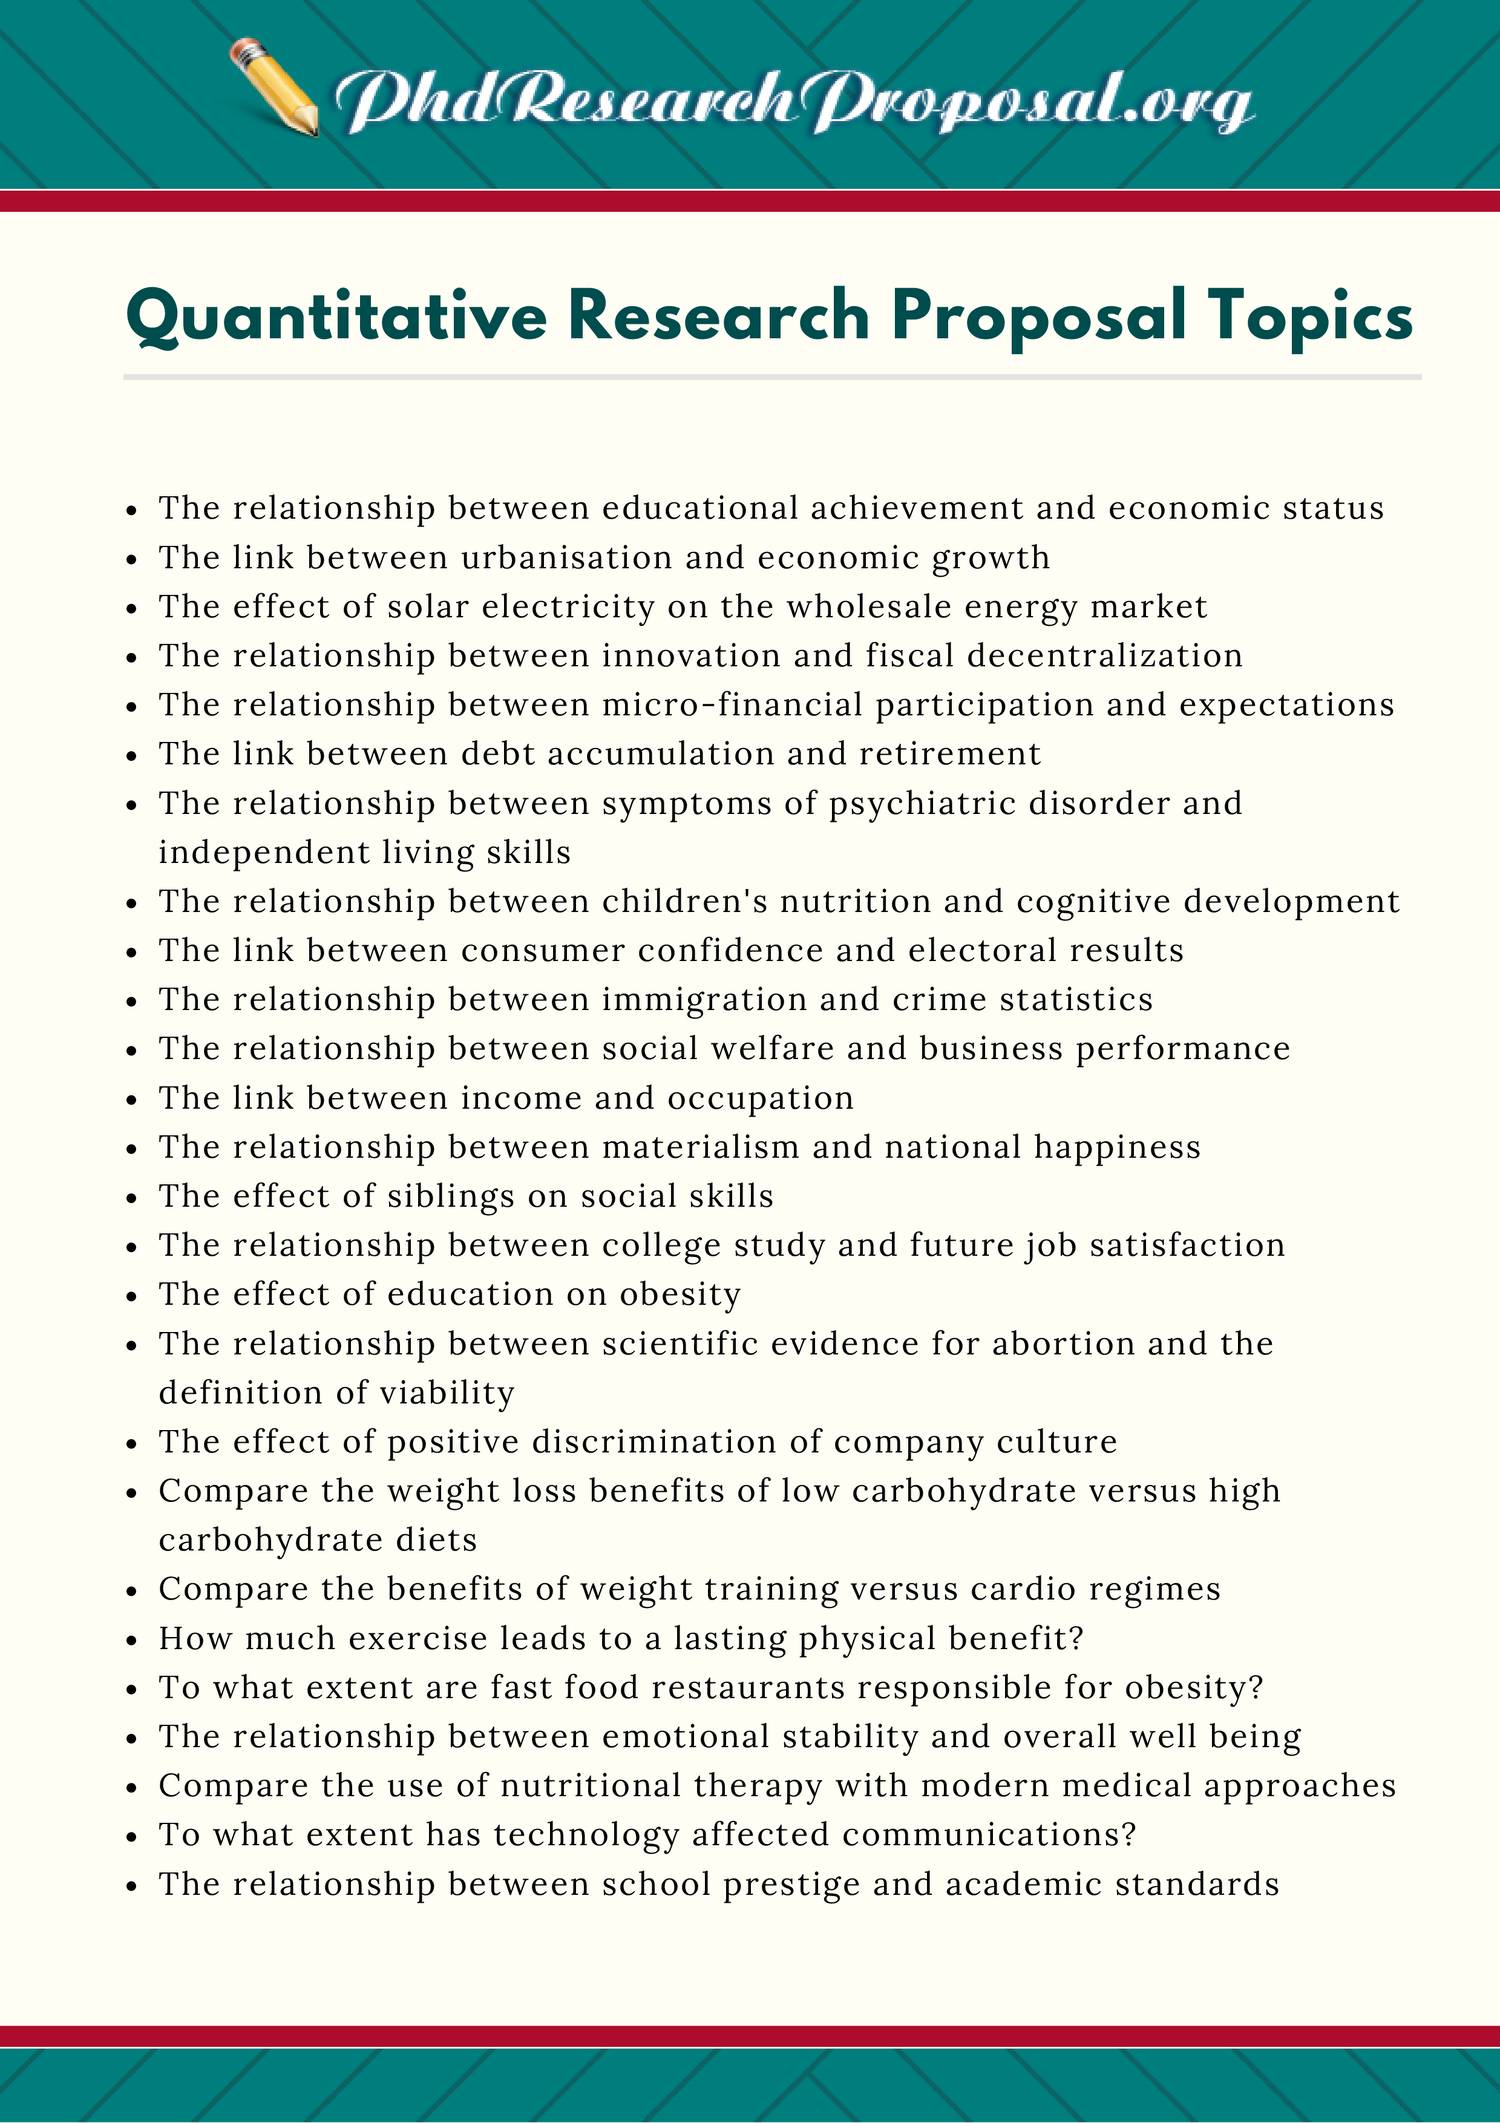 Quantitative-Research-Proposal-Topics-list.pdf | DocDroid